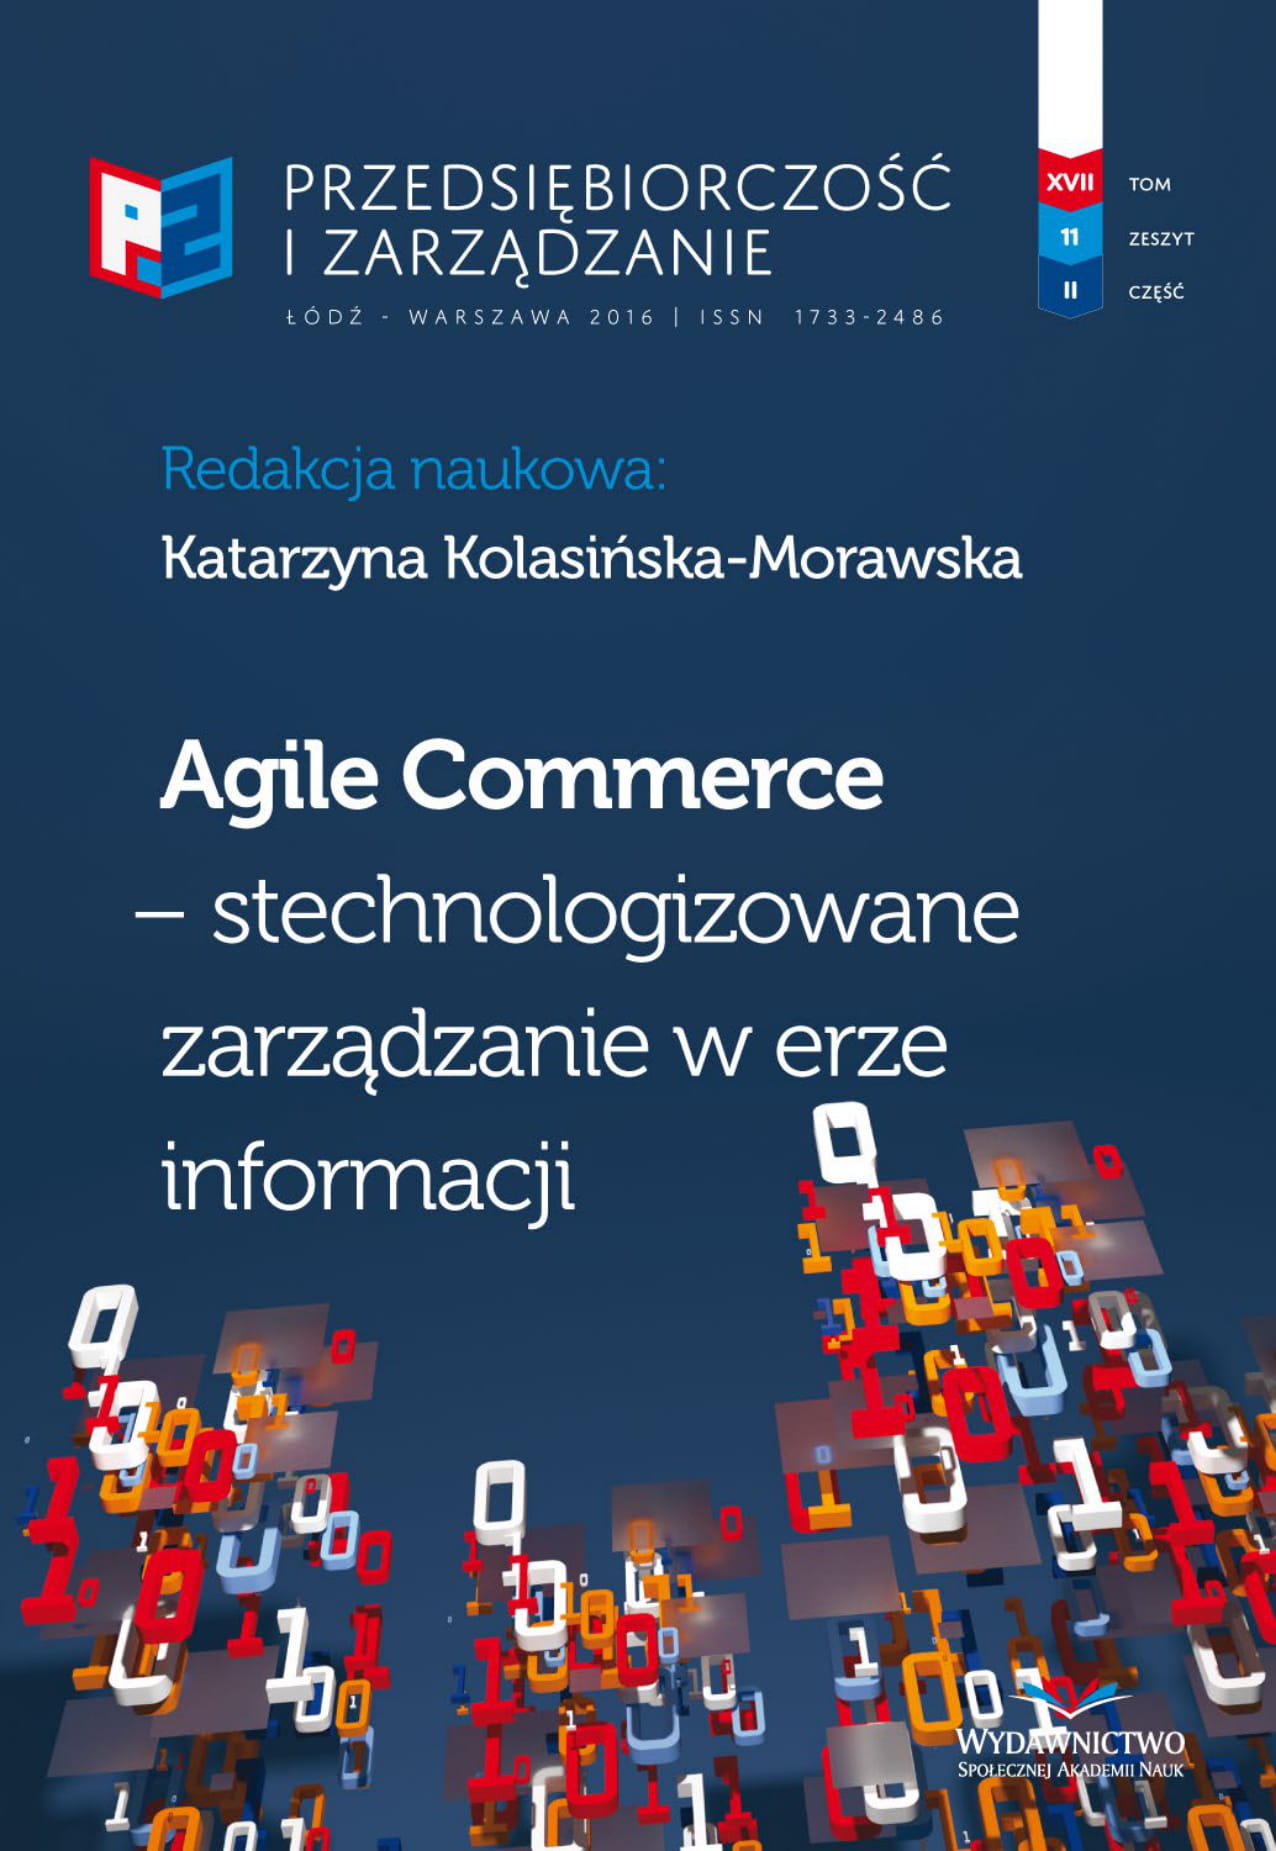 Wrażliwość ekologiczna i społeczna konsumenta jako nowy trend na rynku polskim